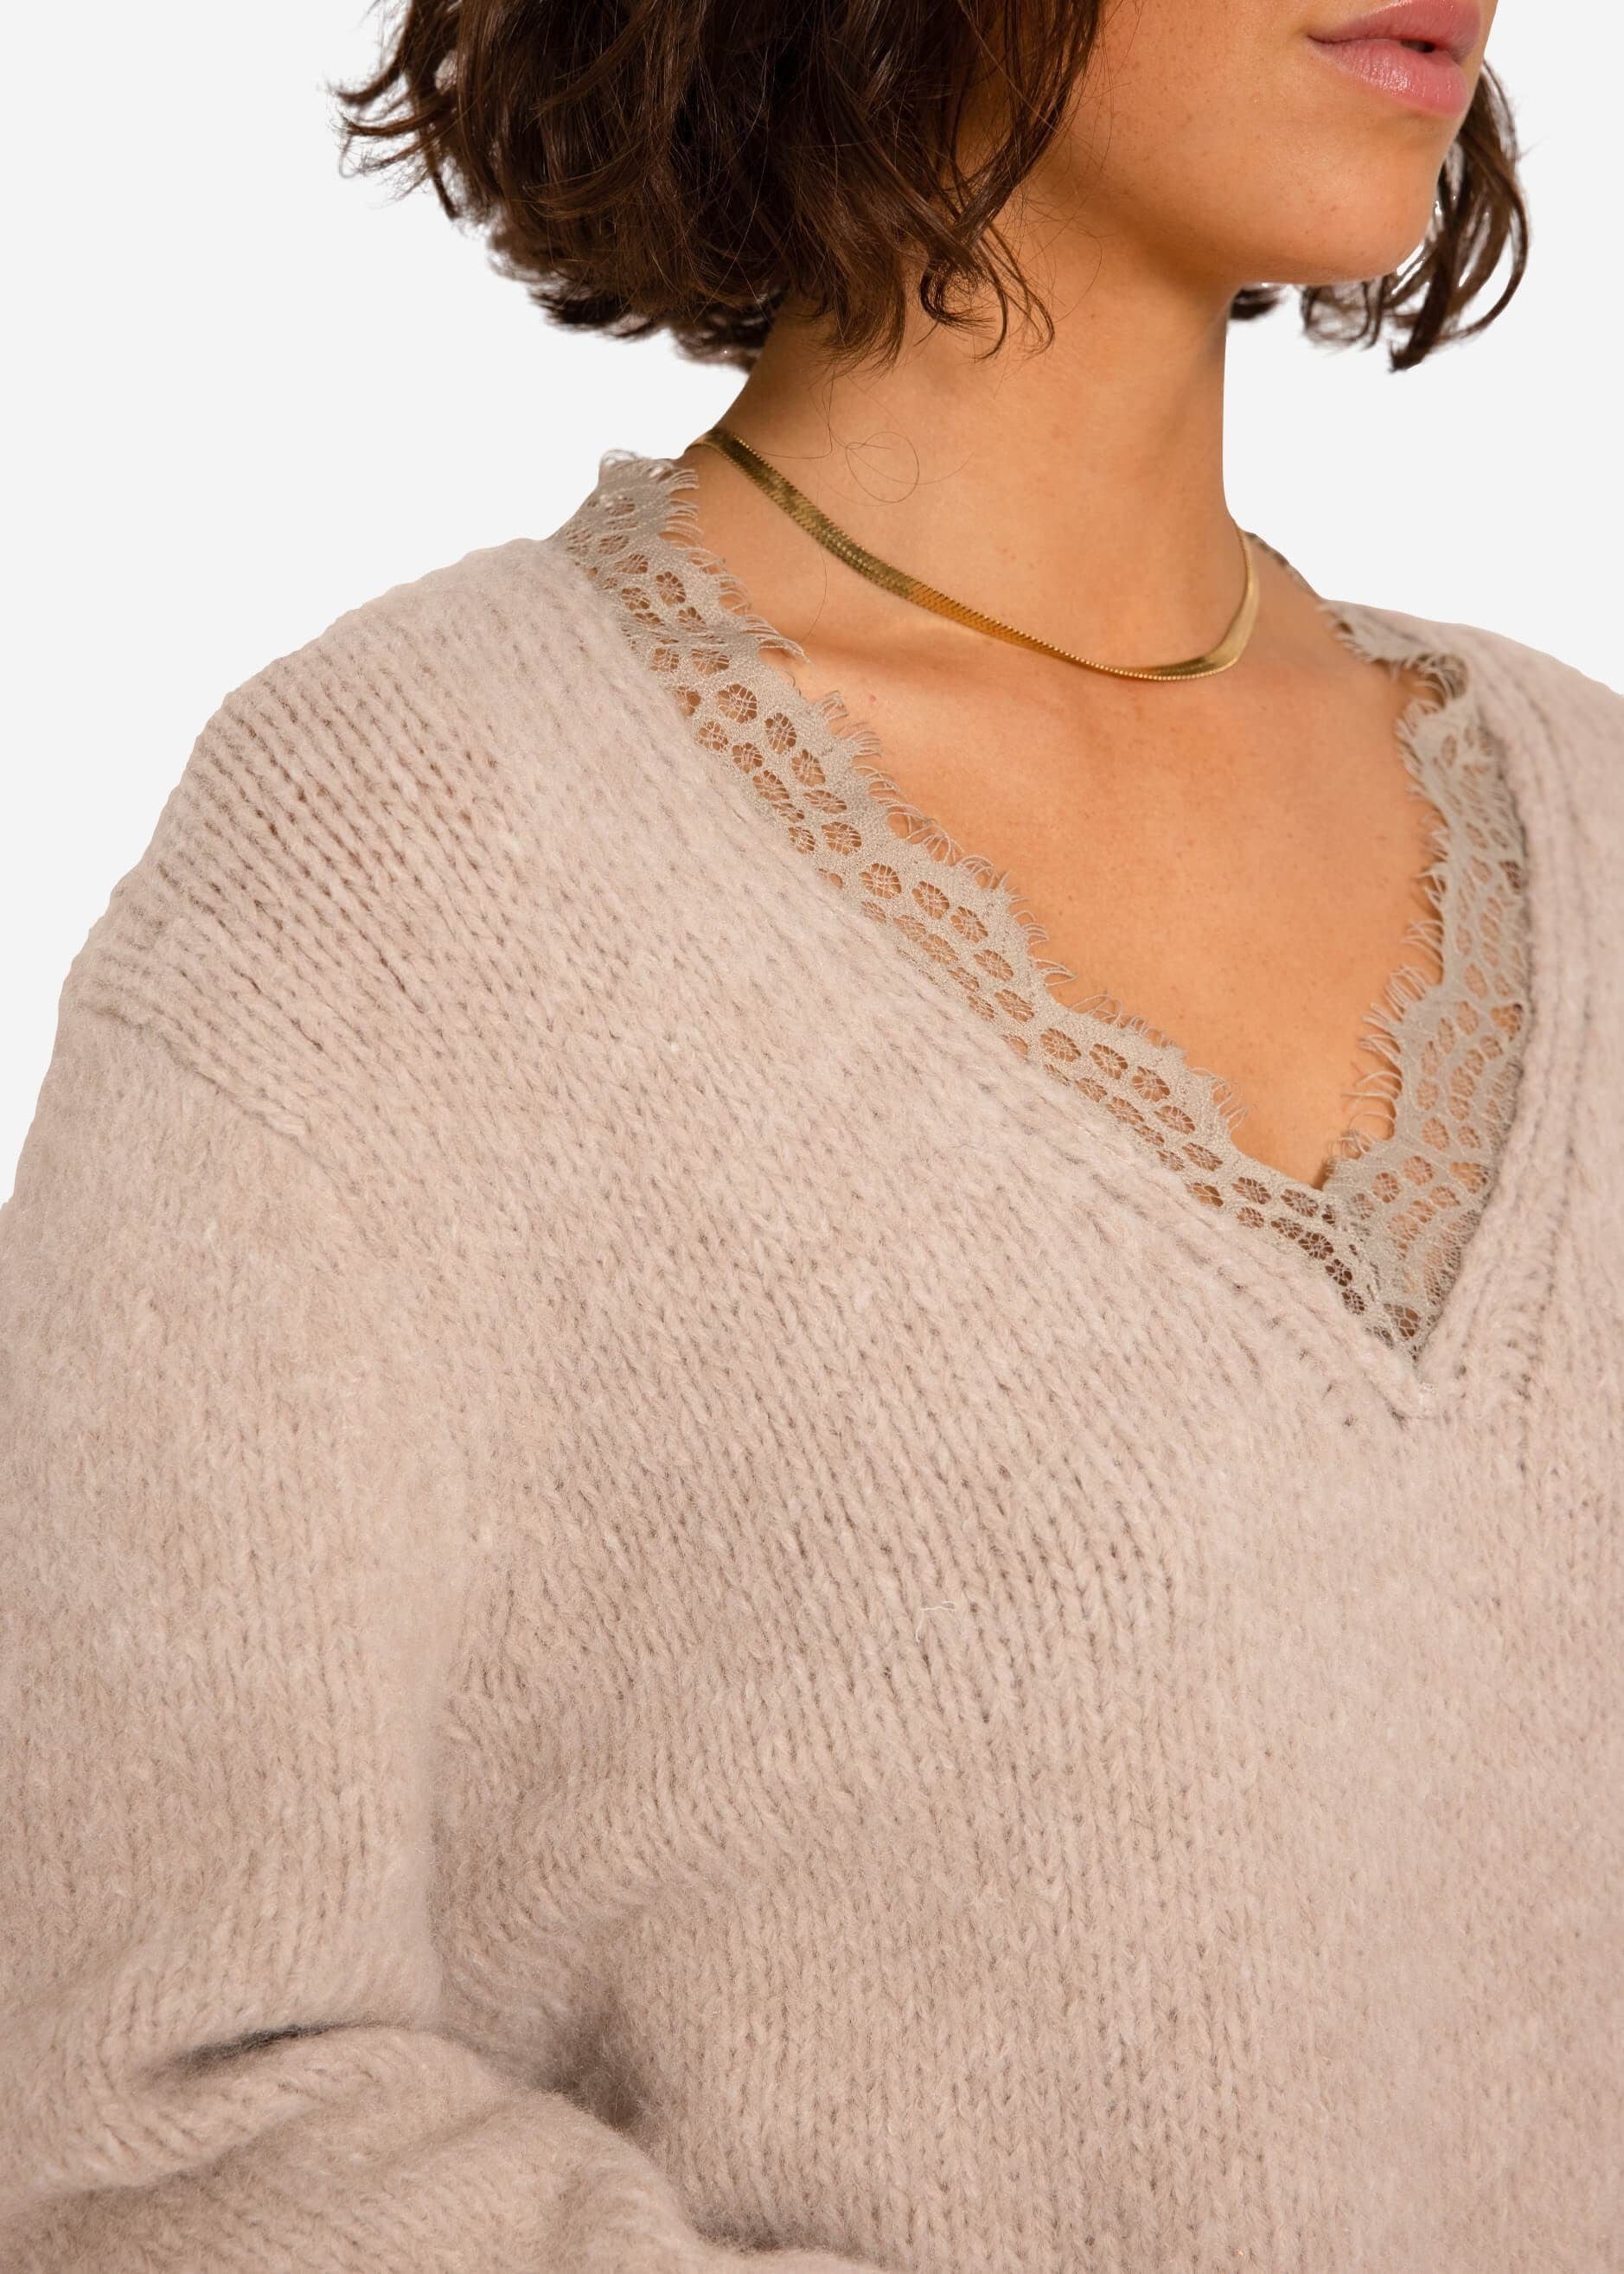 Beige SASSYCLASSY Pullover aus Oversize Spitzen-Ausschnitt Grobstrick Damen Strickpullover Lässiger mit weichem Strickpullover